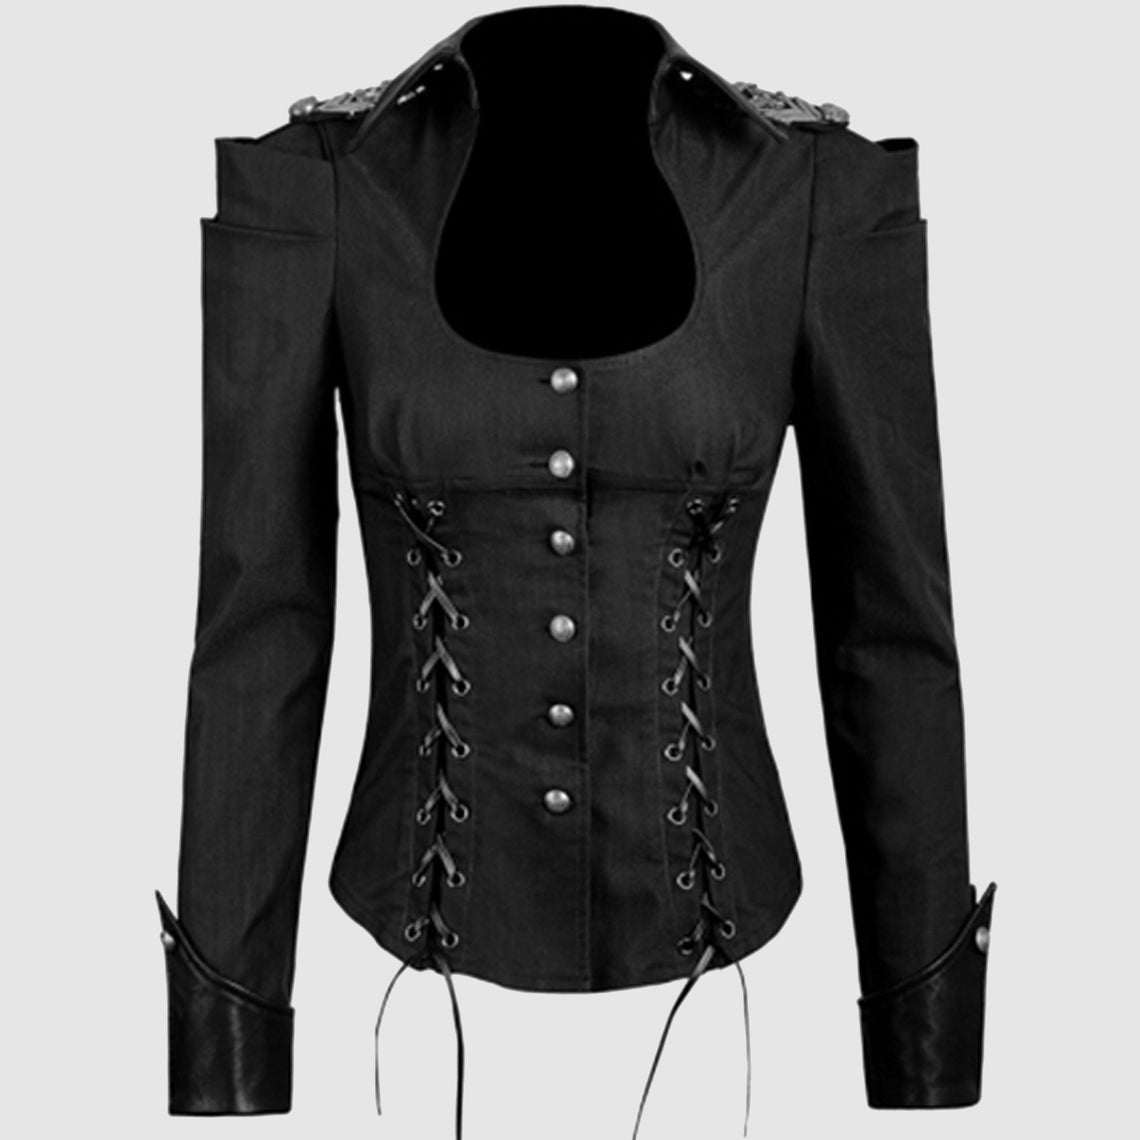 Ladies Black Gothic Military Uniform Shirtsladies Fashion - Etsy